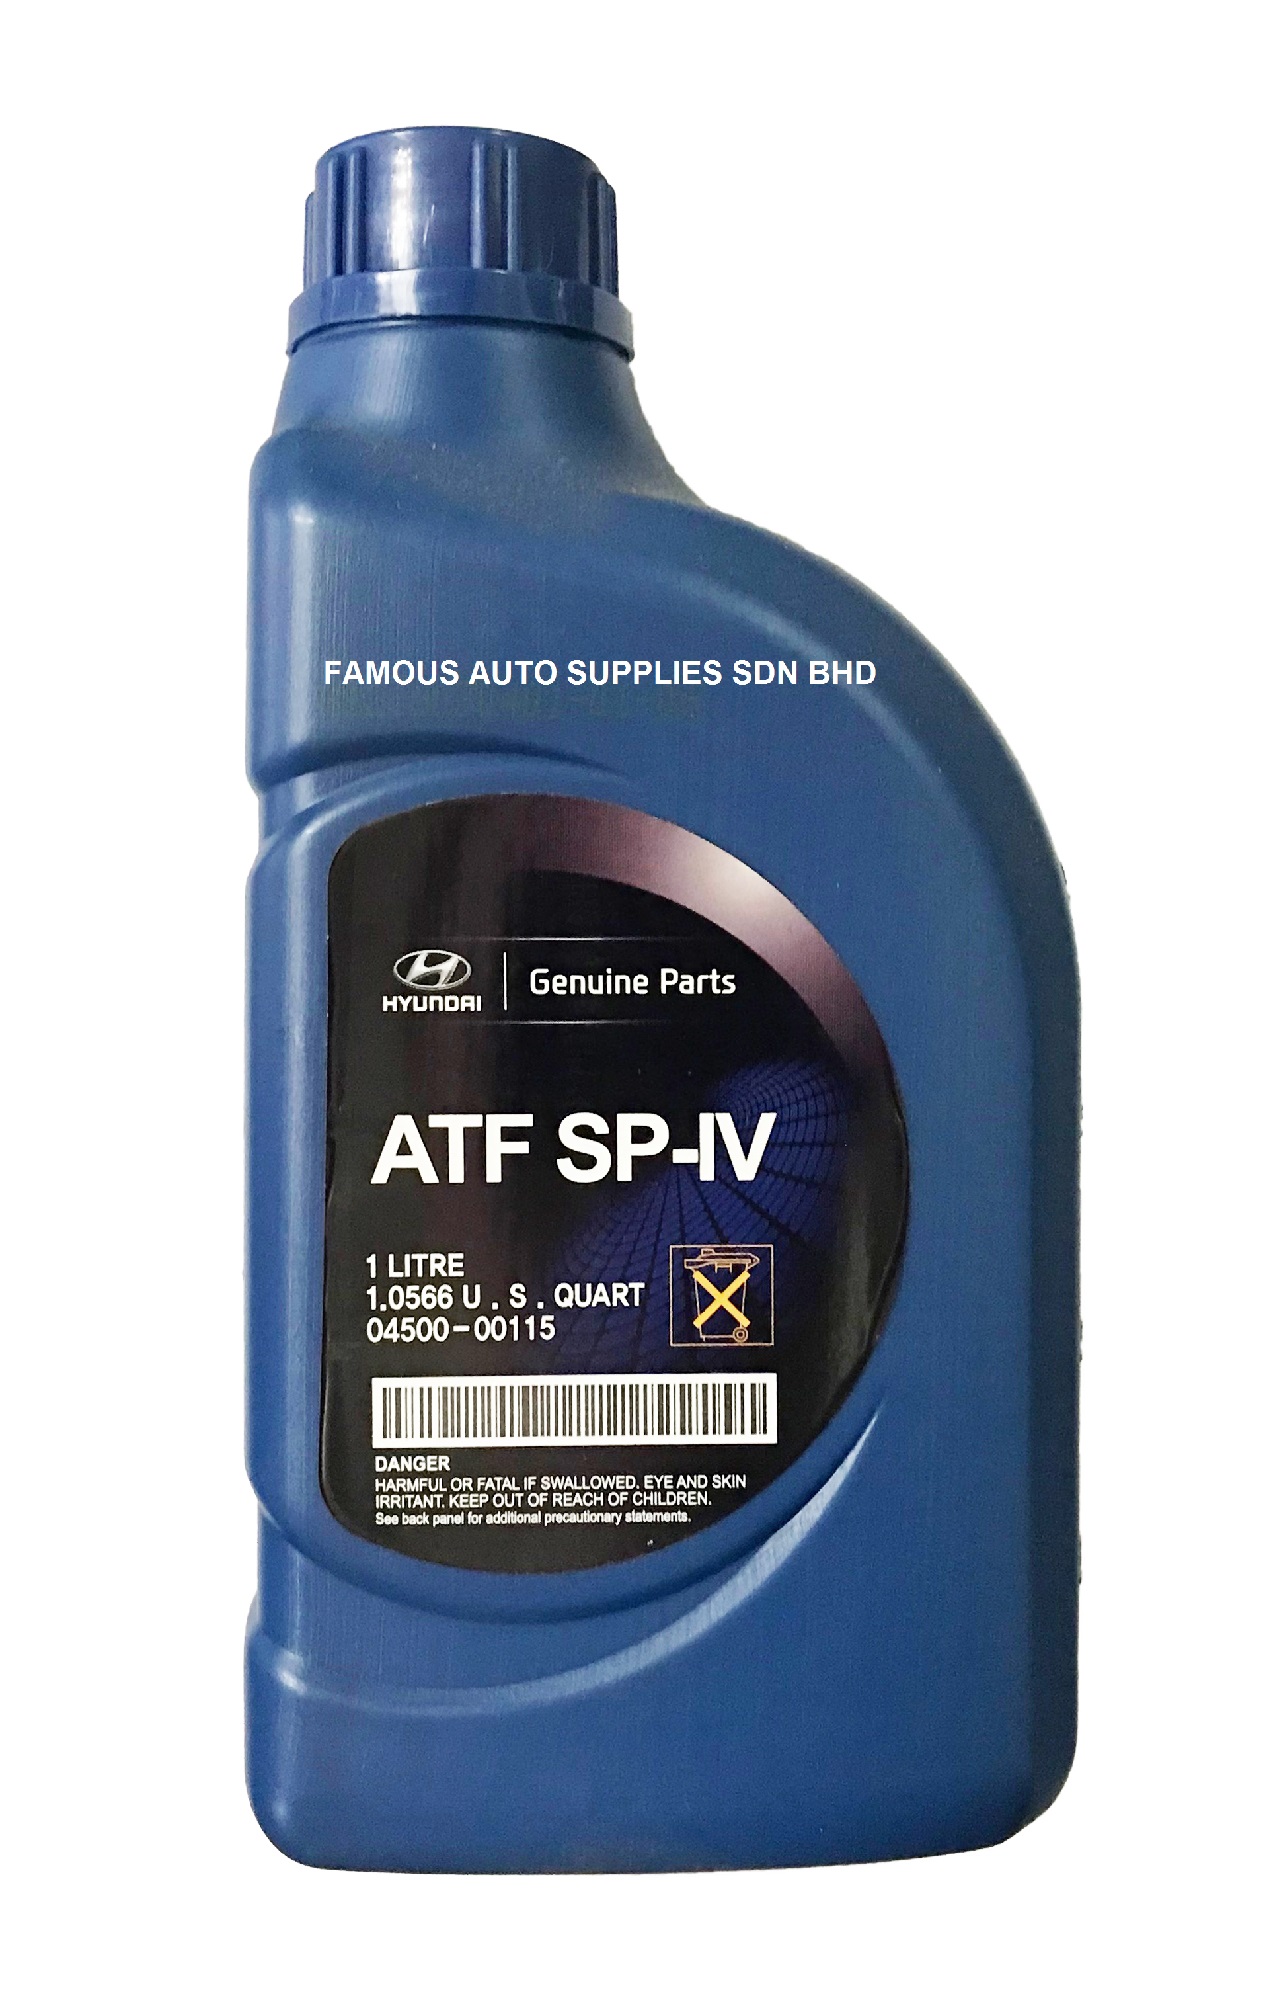 ATF SP-IV